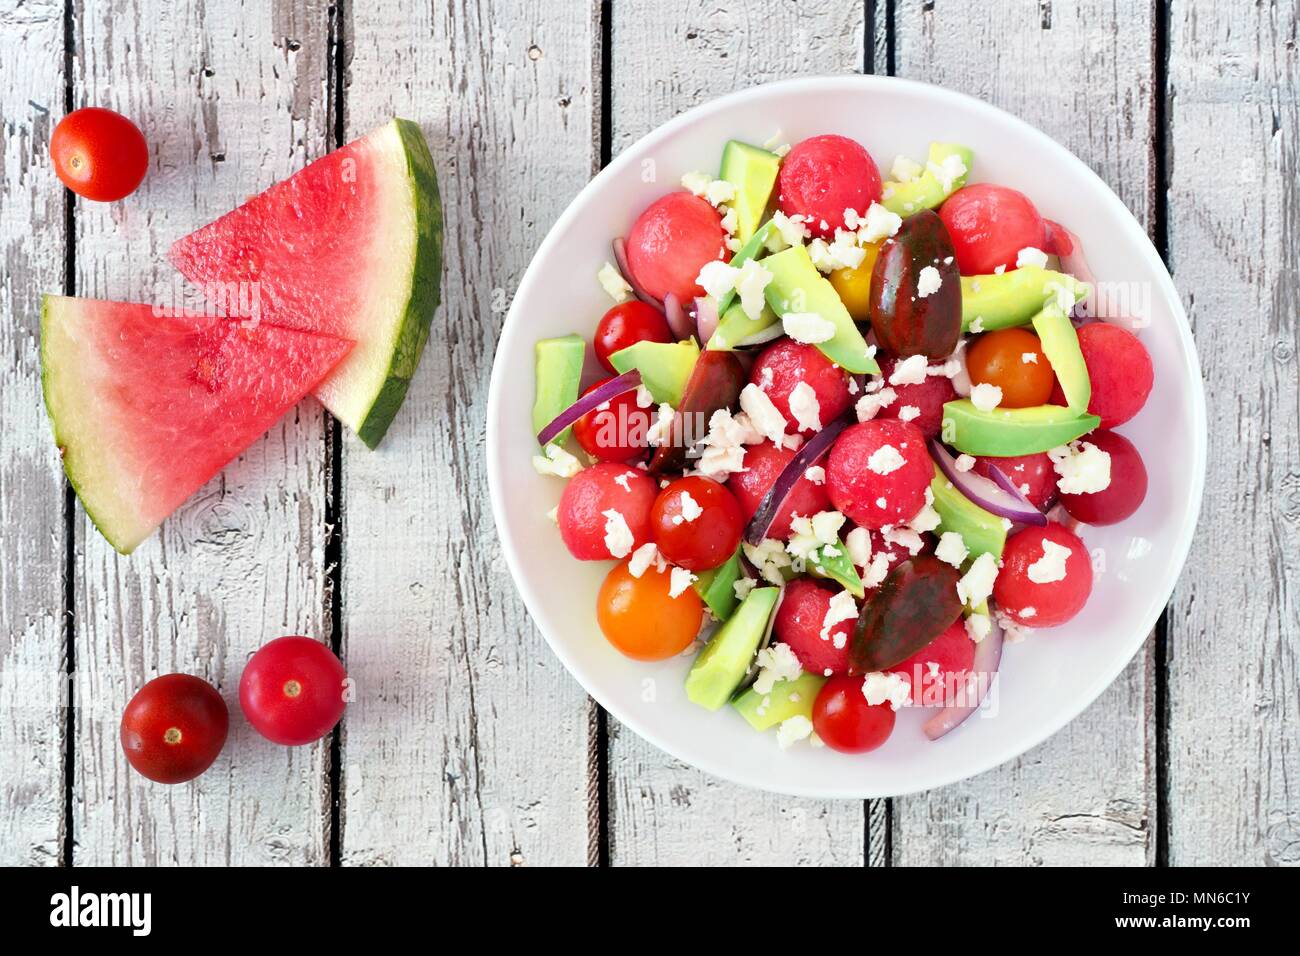 Sommer Salat mit Wassermelone, Avocado, Tomaten und Feta Käse, oben Szene  auf einem rustikalen weiß Holz Hintergrund Stockfotografie - Alamy